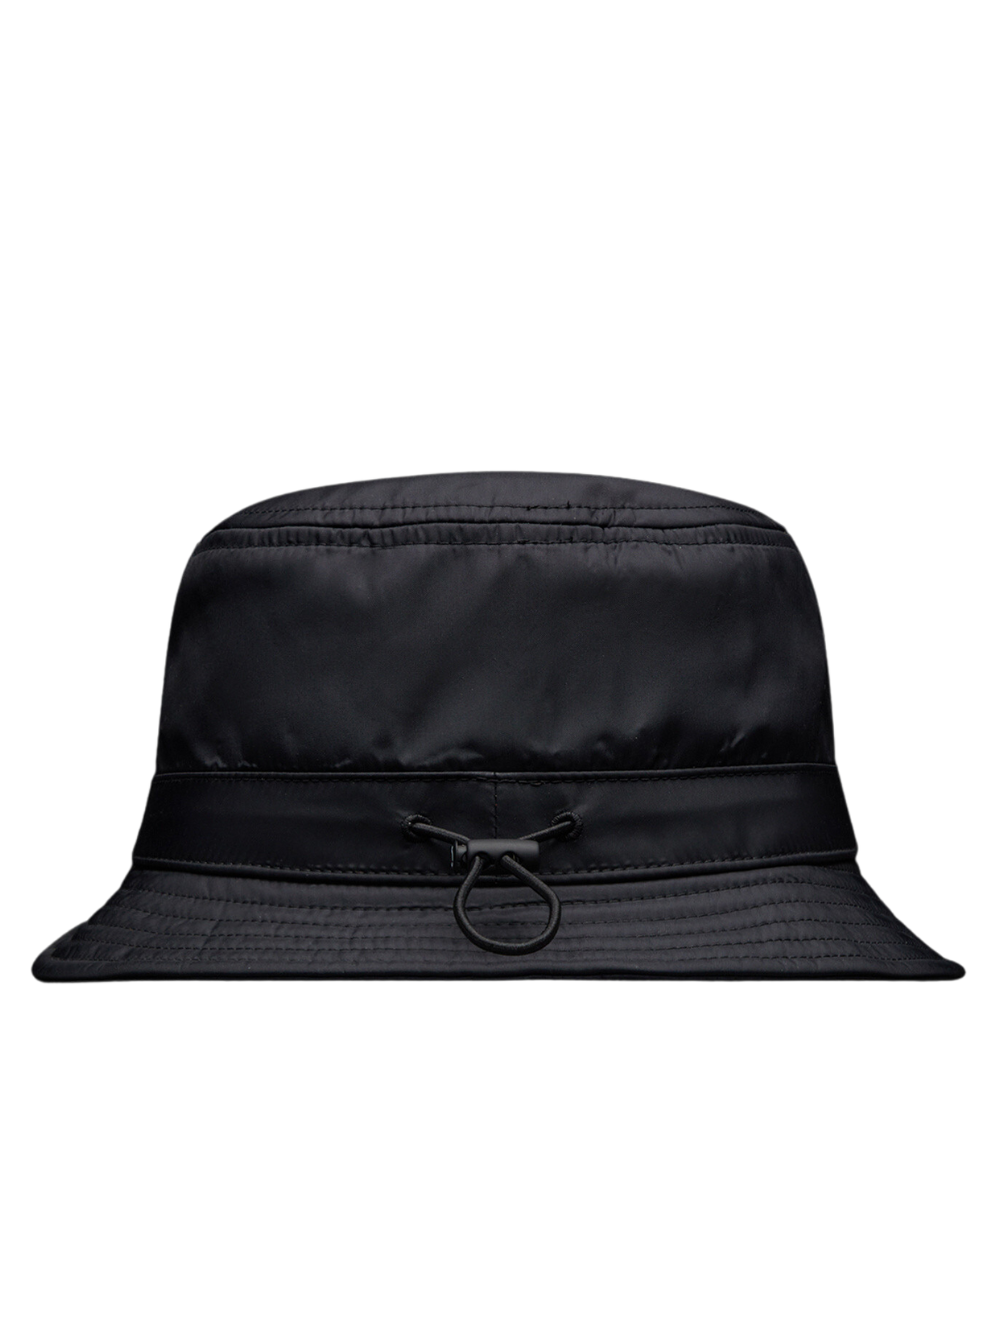 MONCLER GENIUS X 7 MONCLER FRGMT HIROSHI FUJIWARA Bucket Hat Black - MAISONDEFASHION.COM